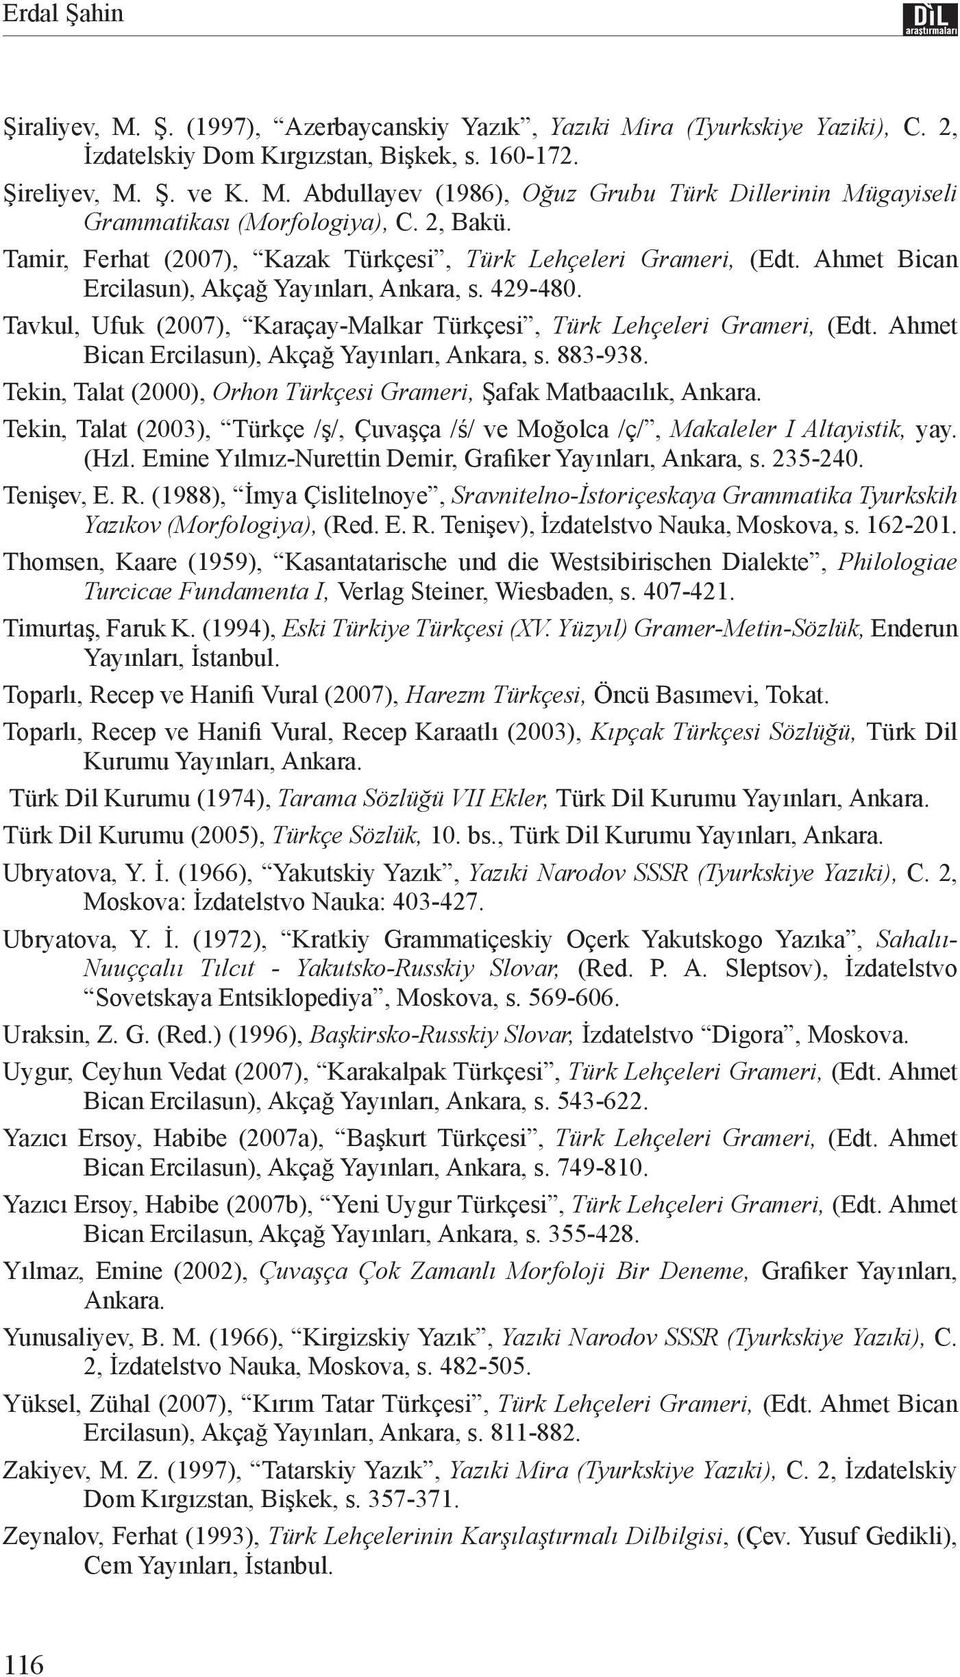 Tavkul, Ufuk (2007), Karaçay-Malkar Türkçesi, Türk Lehçeleri Grameri, (Edt. Ahmet Bican Ercilasun), Akçağ Yayınları, Ankara, s. 883-938.